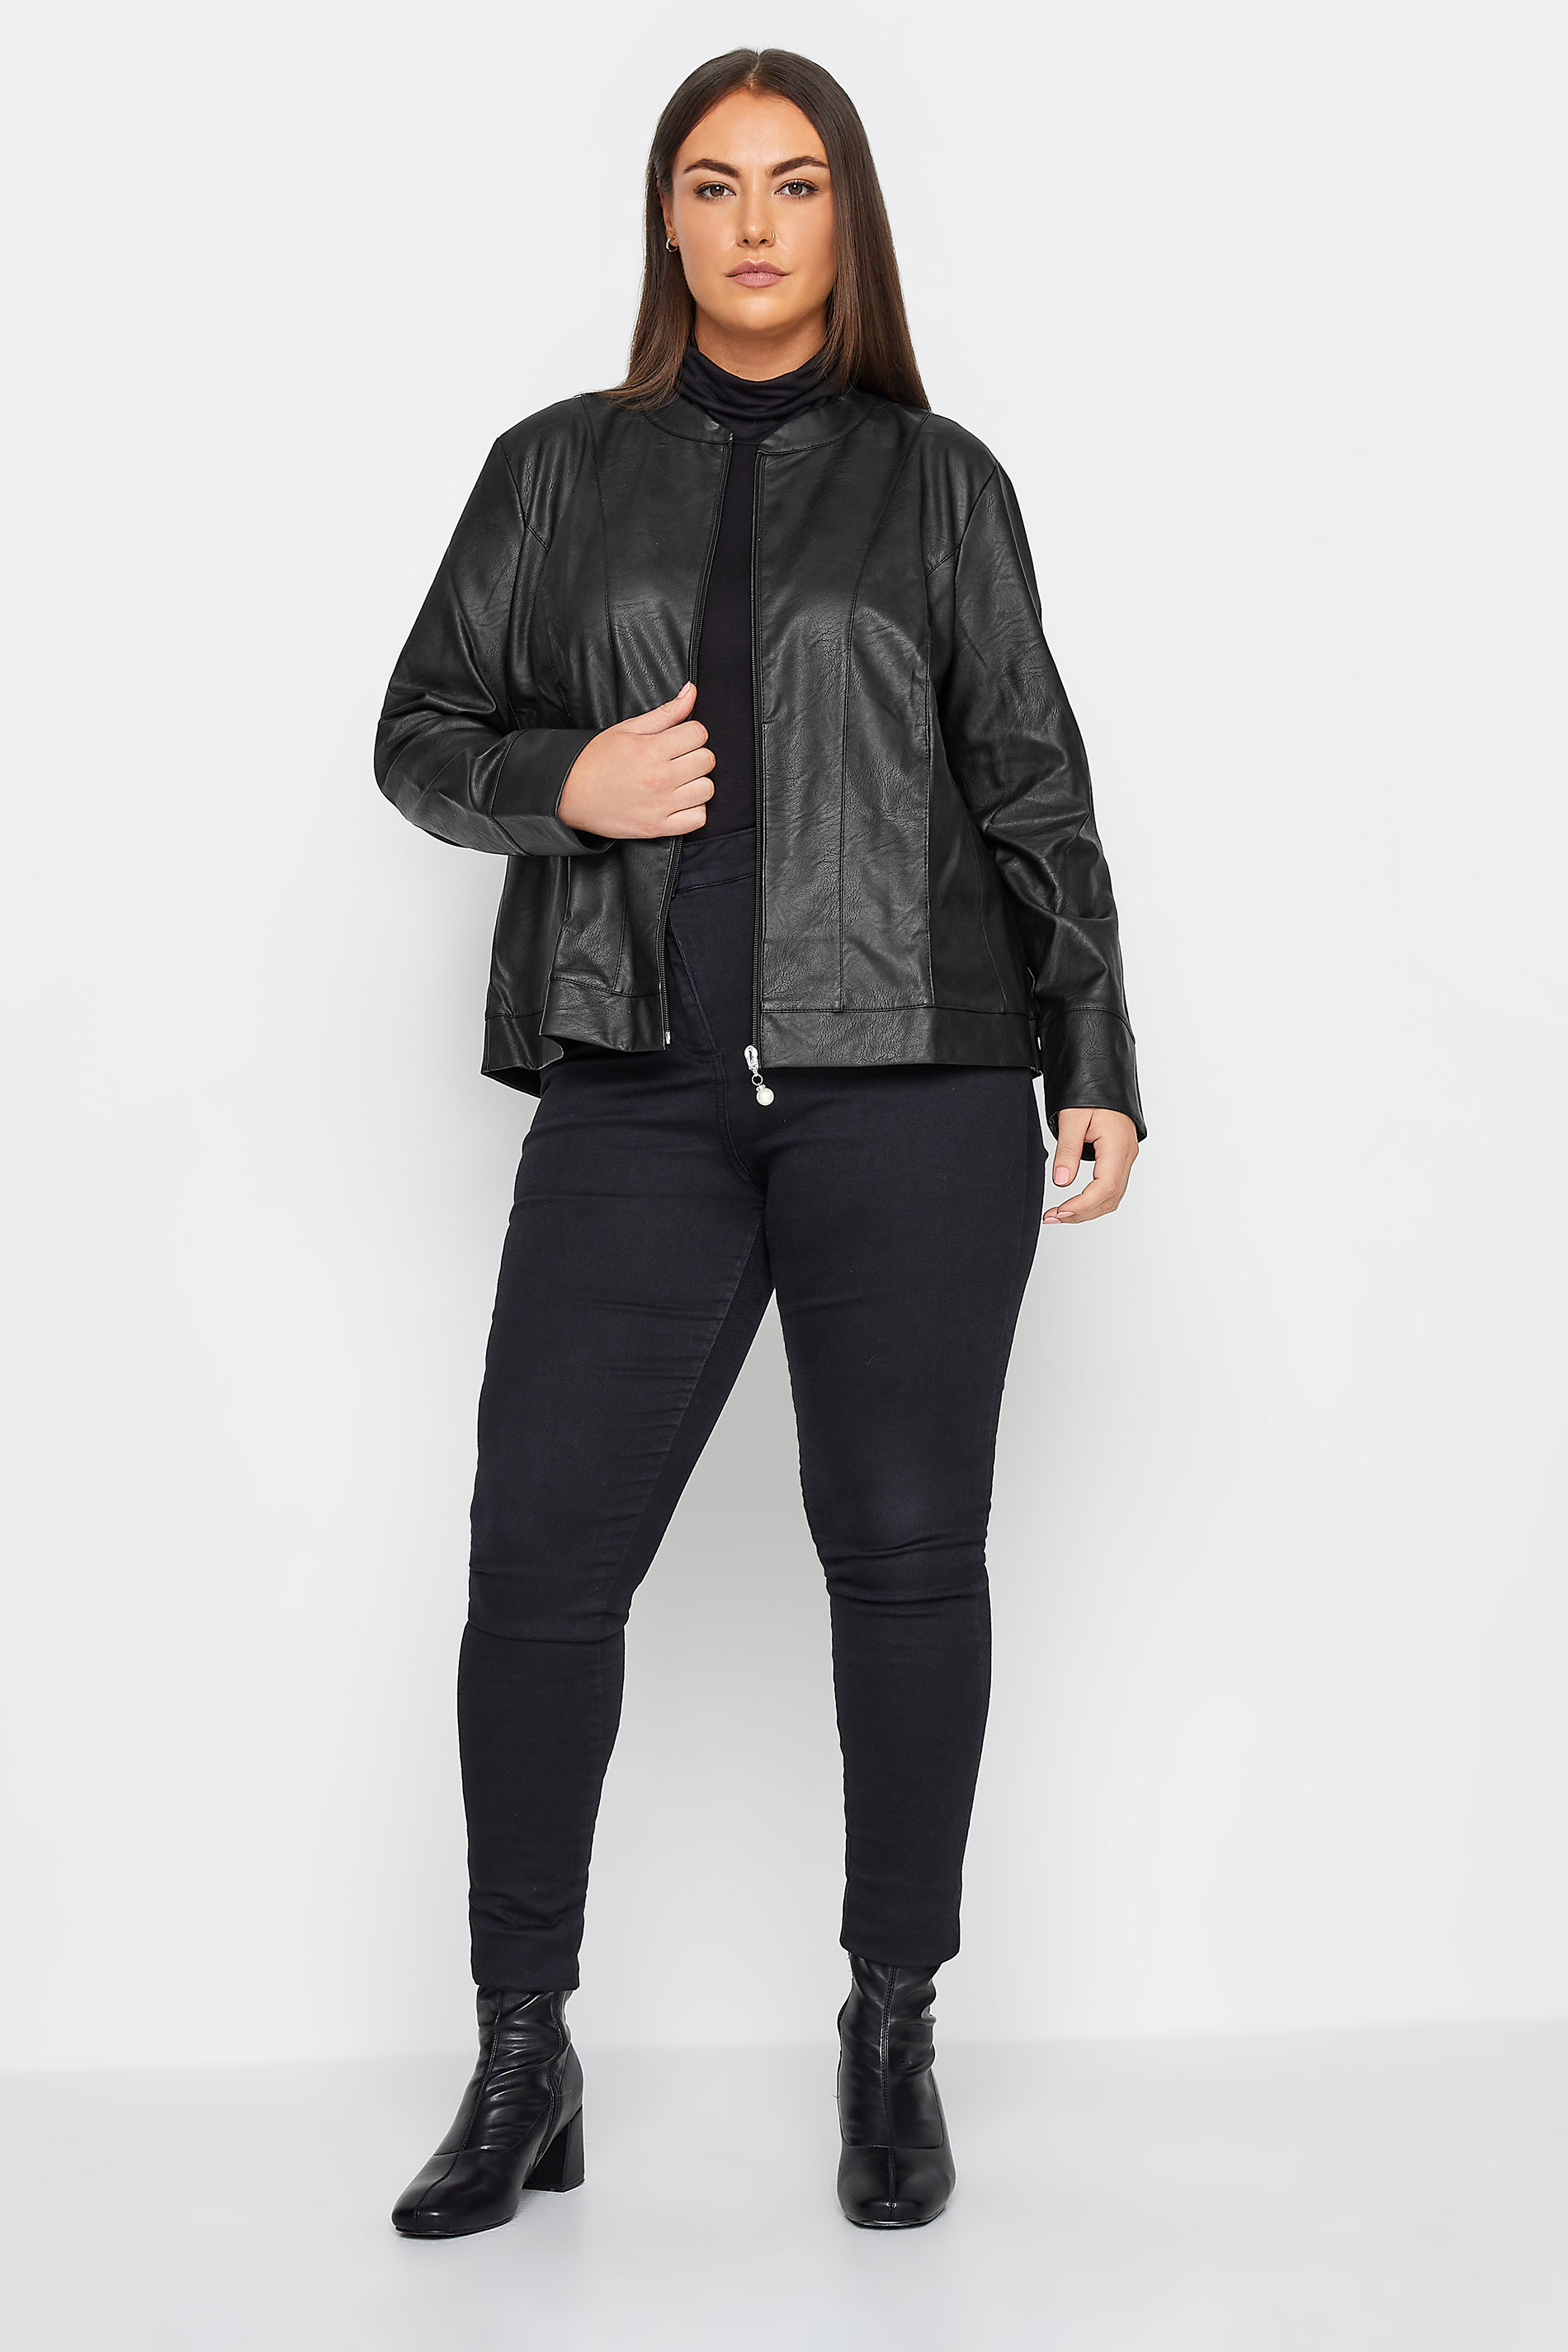 City Chic Black Faux Leather Jacket | Evans 3